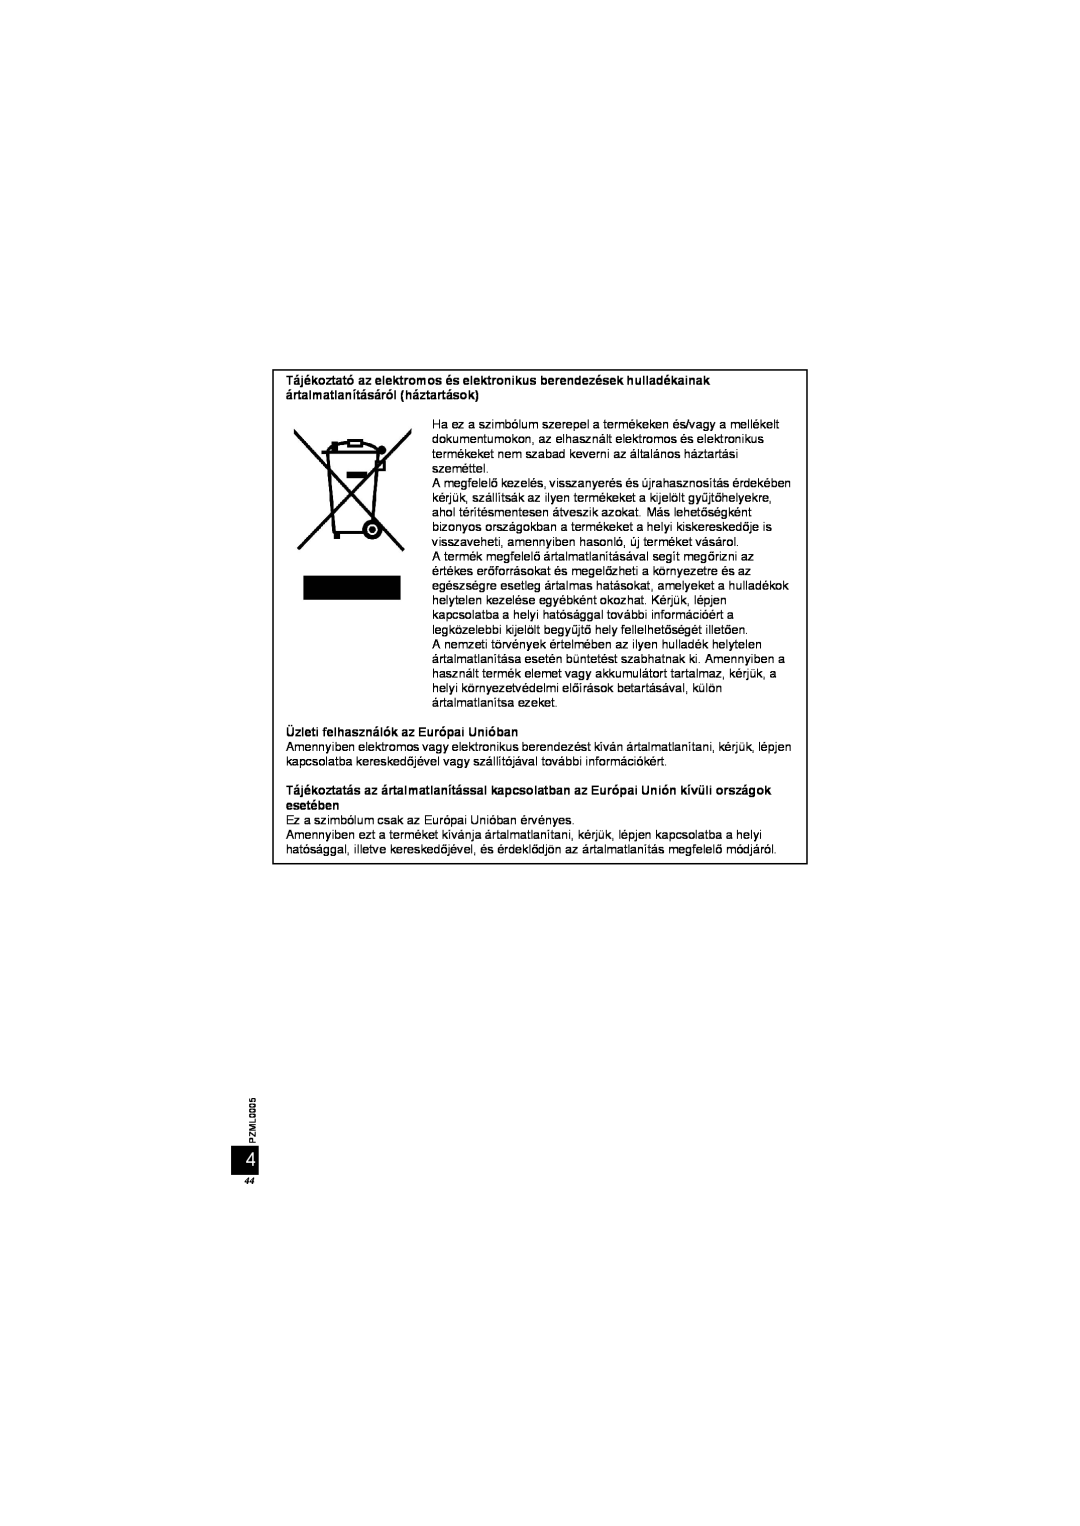 Panasonic DY-WL10 manual Üzleti felhasználók az Európai Unióban 